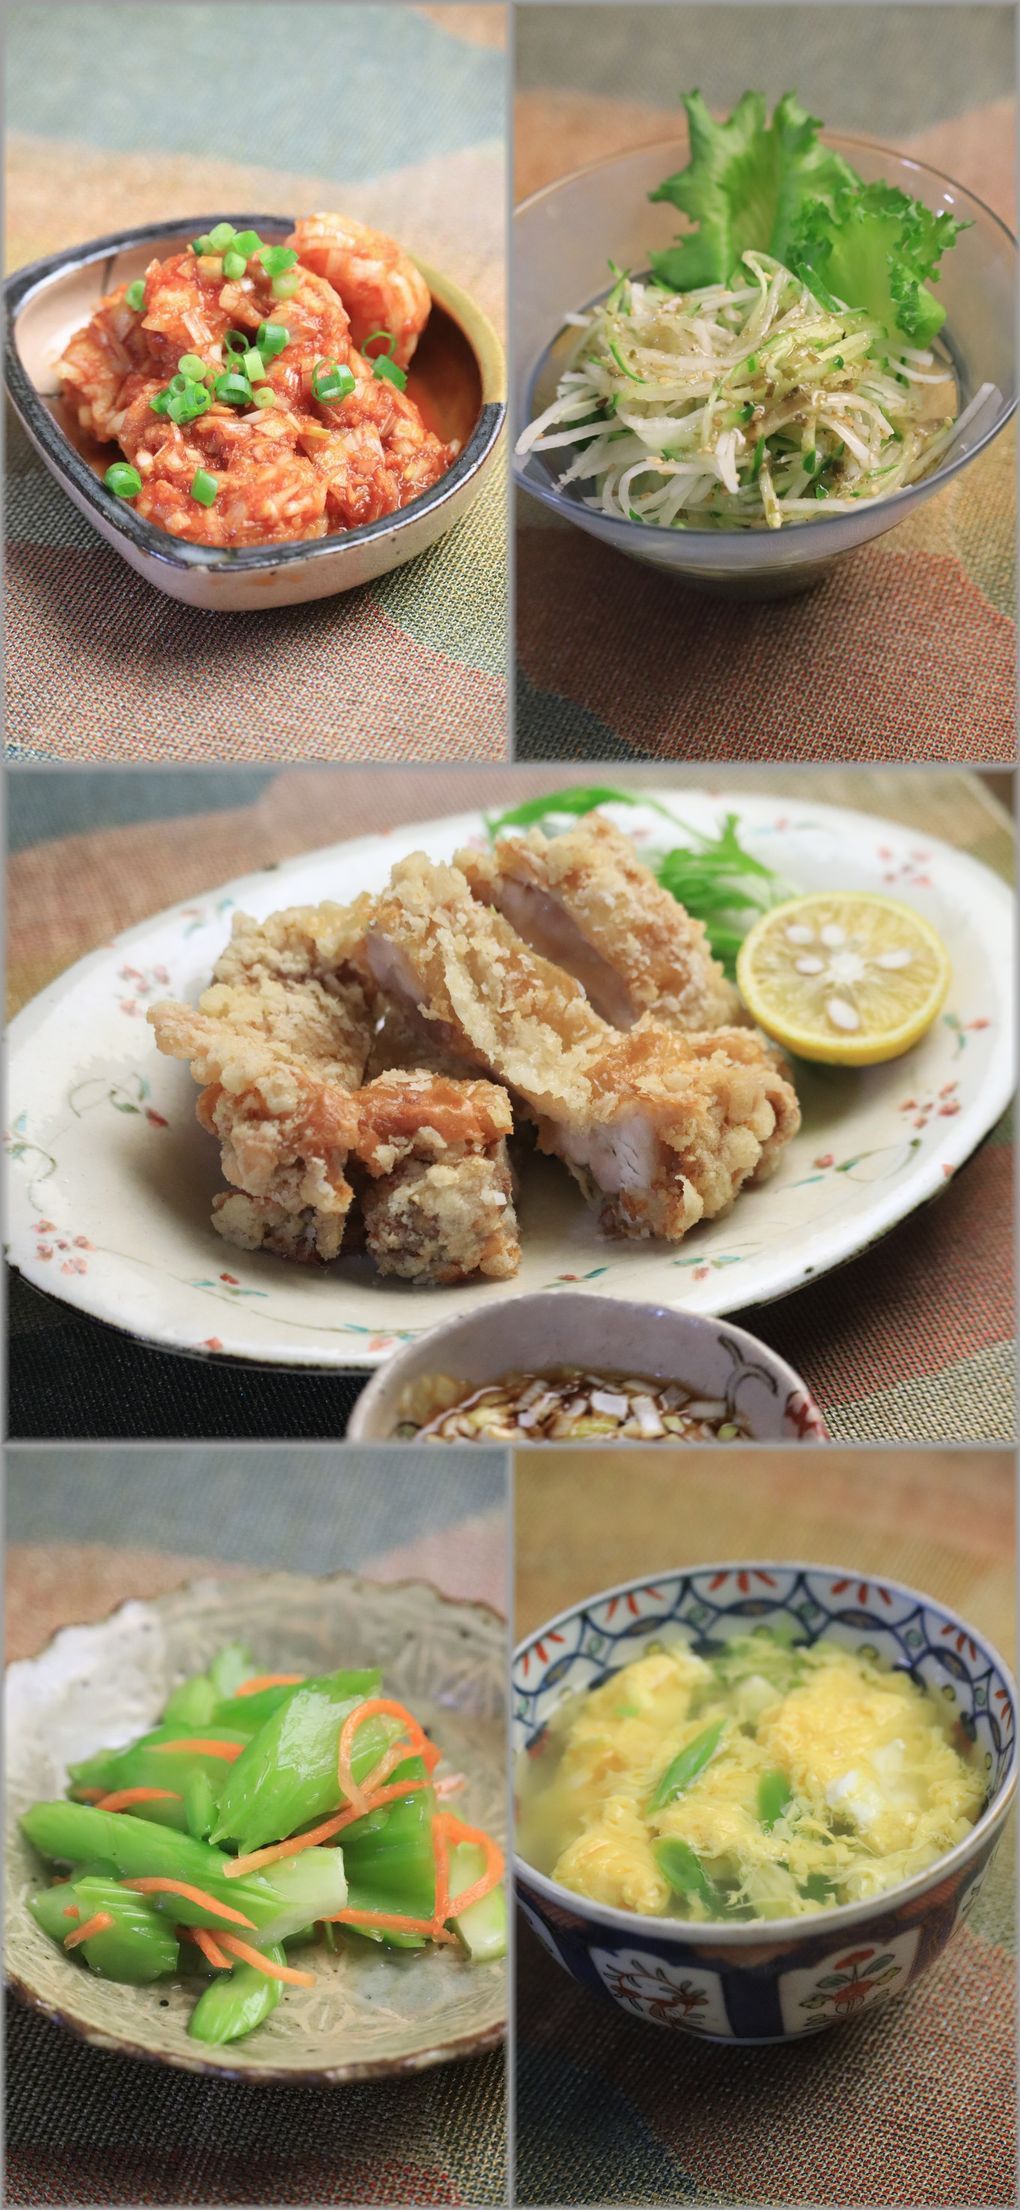 レシピ ざくざく油淋鶏 と 献立 と 贅沢な平日 よめ膳 Yomeカフェ Powered By ライブドアブログ